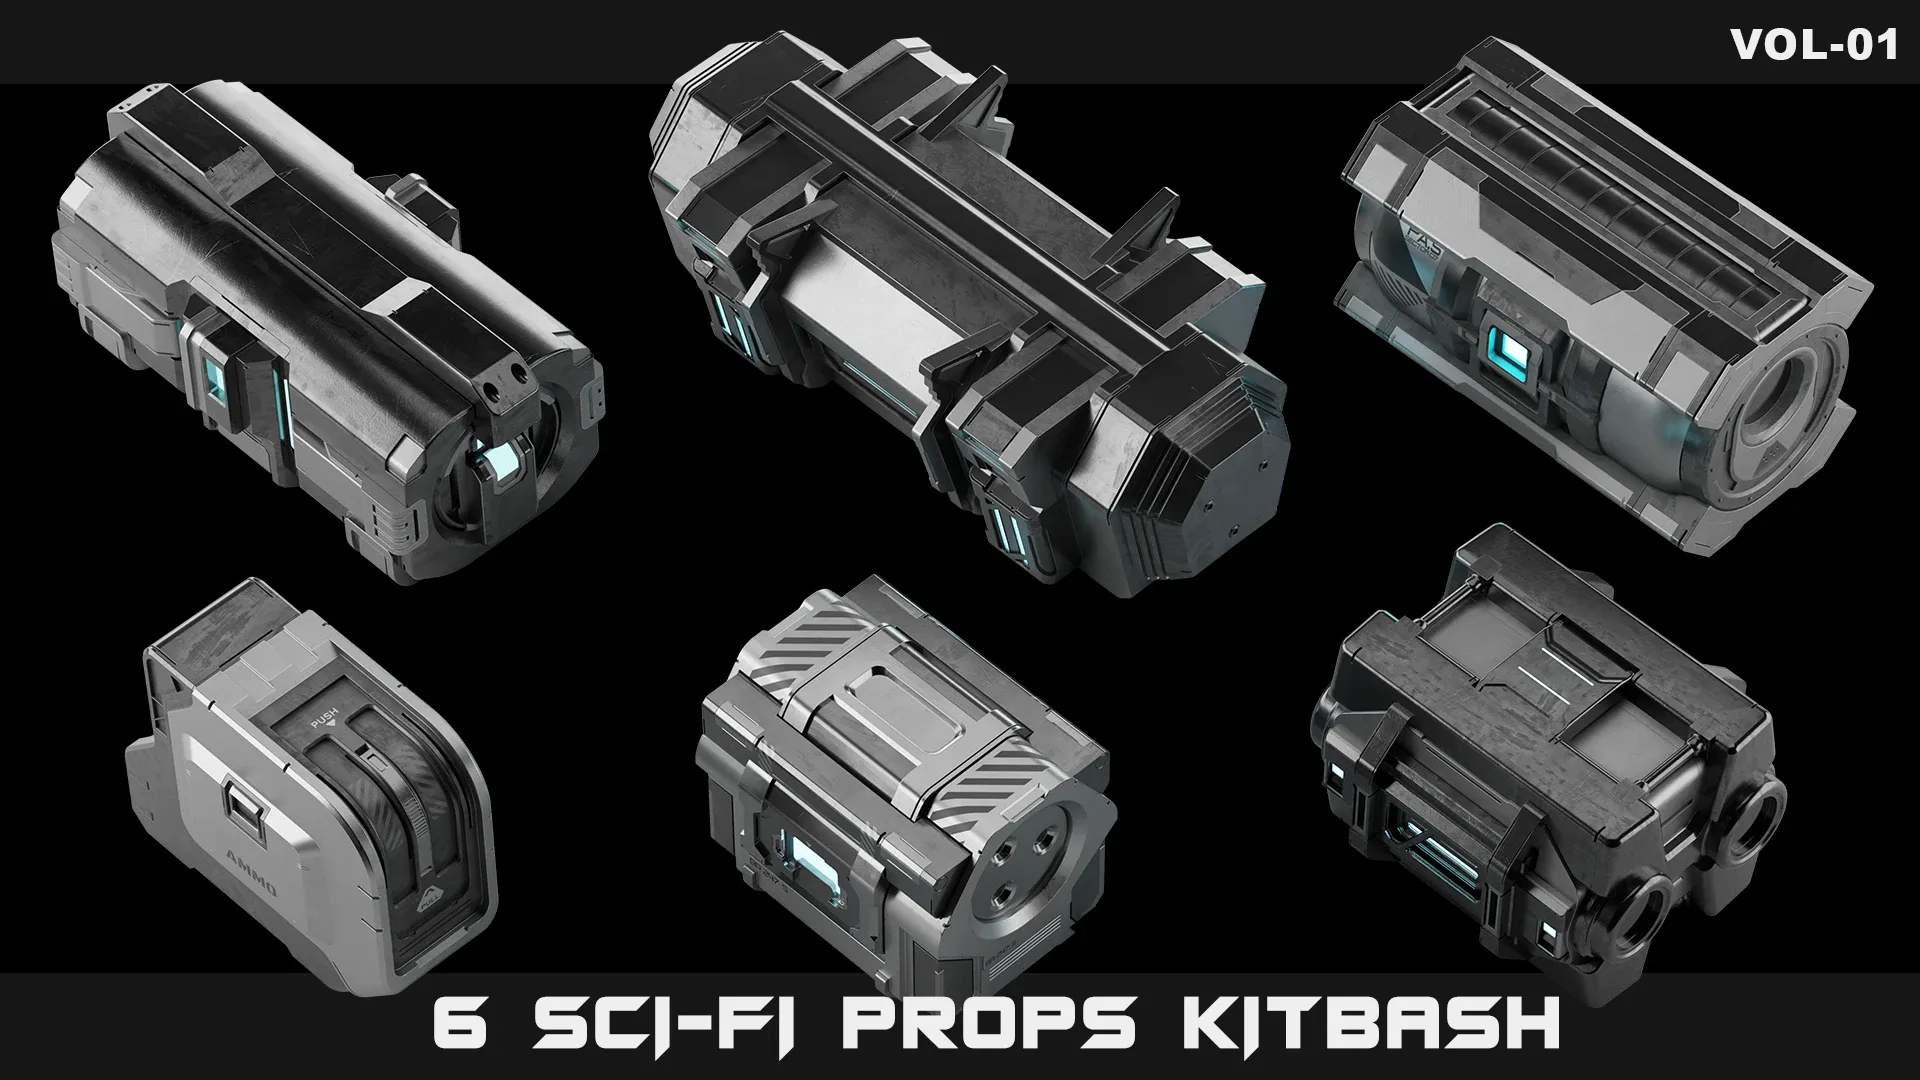 6 Sci-Fi props kitbash